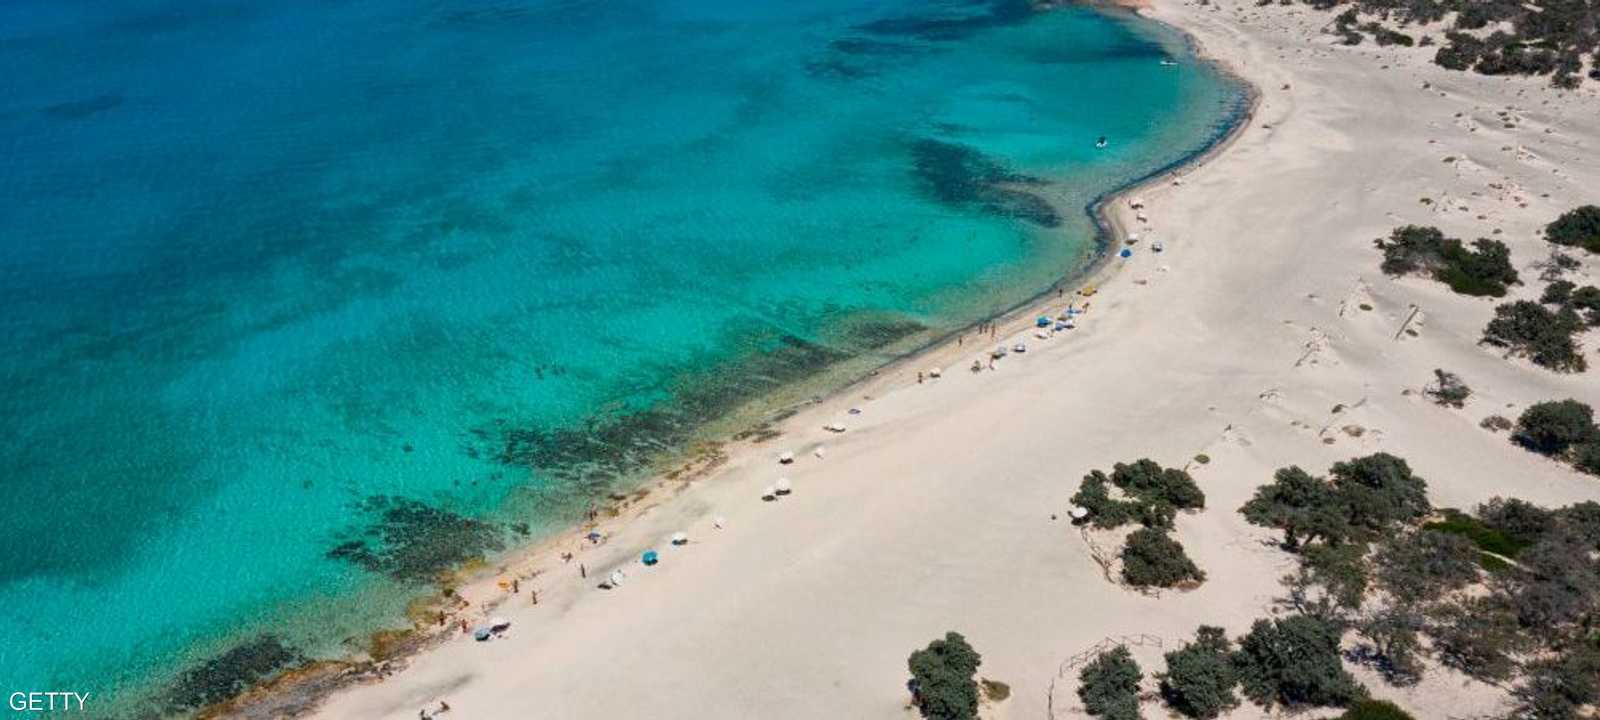 شواطئ كريت اليونانية لم تزدحم مثل السابق